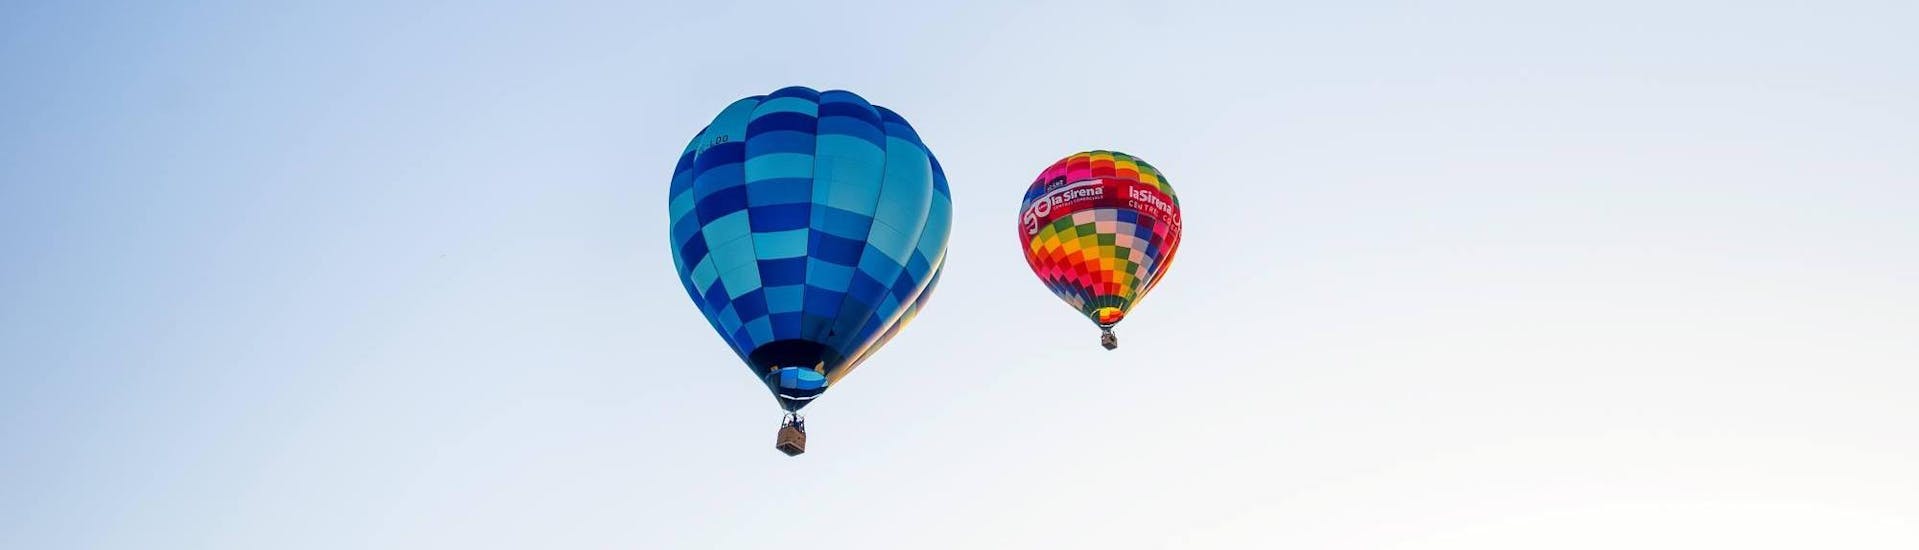 Zwei Heißluftballone von Ibiza en Globo schweben in aller Ruhe mehrere Meter im Himmel.